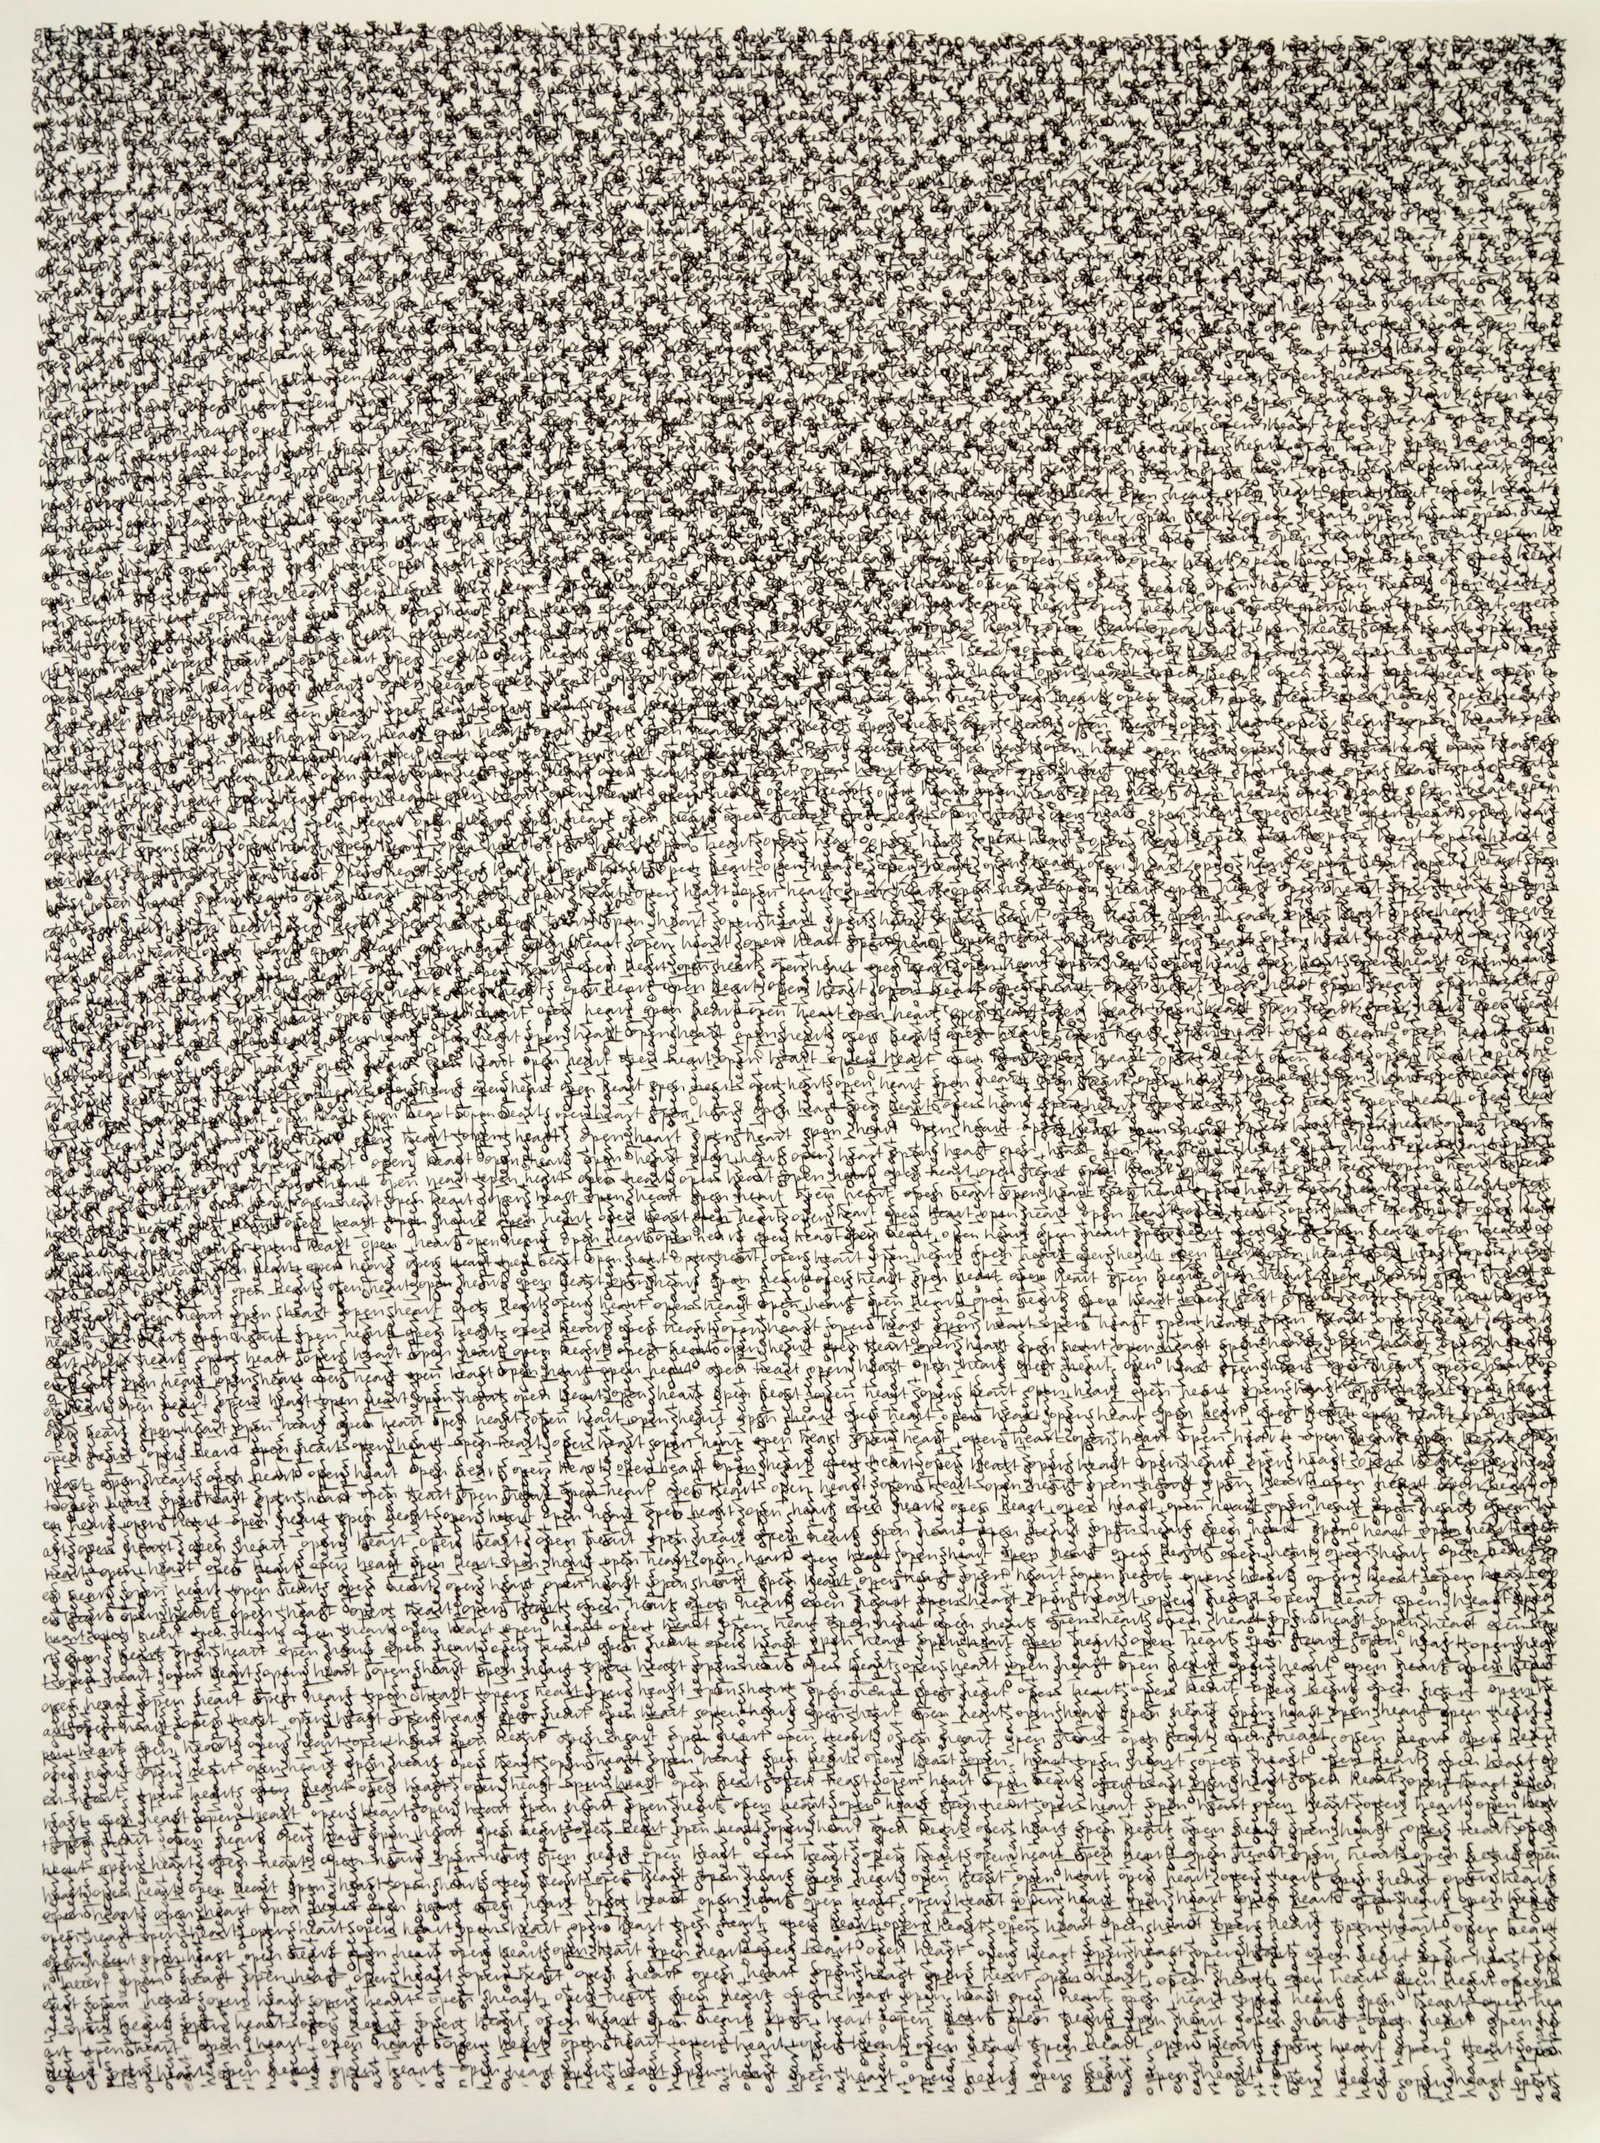 Meditation XXIII (open heart), ink on paper, 18x24", 2020